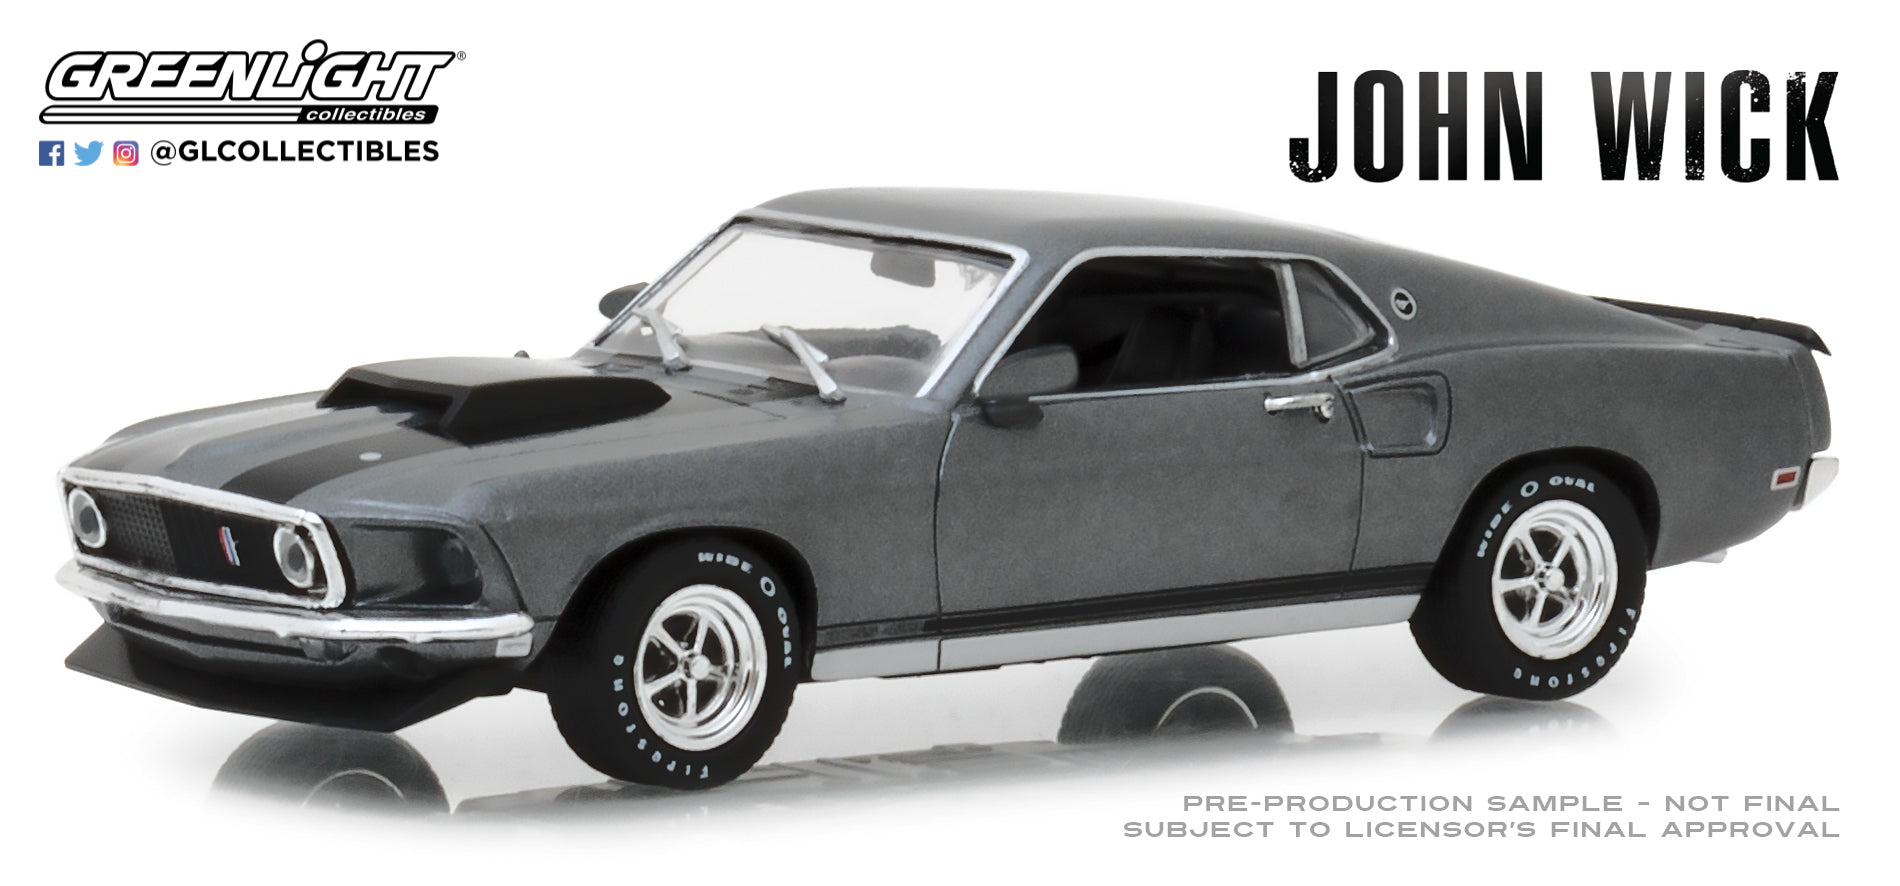 Greenlight - 1969 Ford Mustang Boss 429 - John Wick - 86540 - 1:43 - H –  einszu64